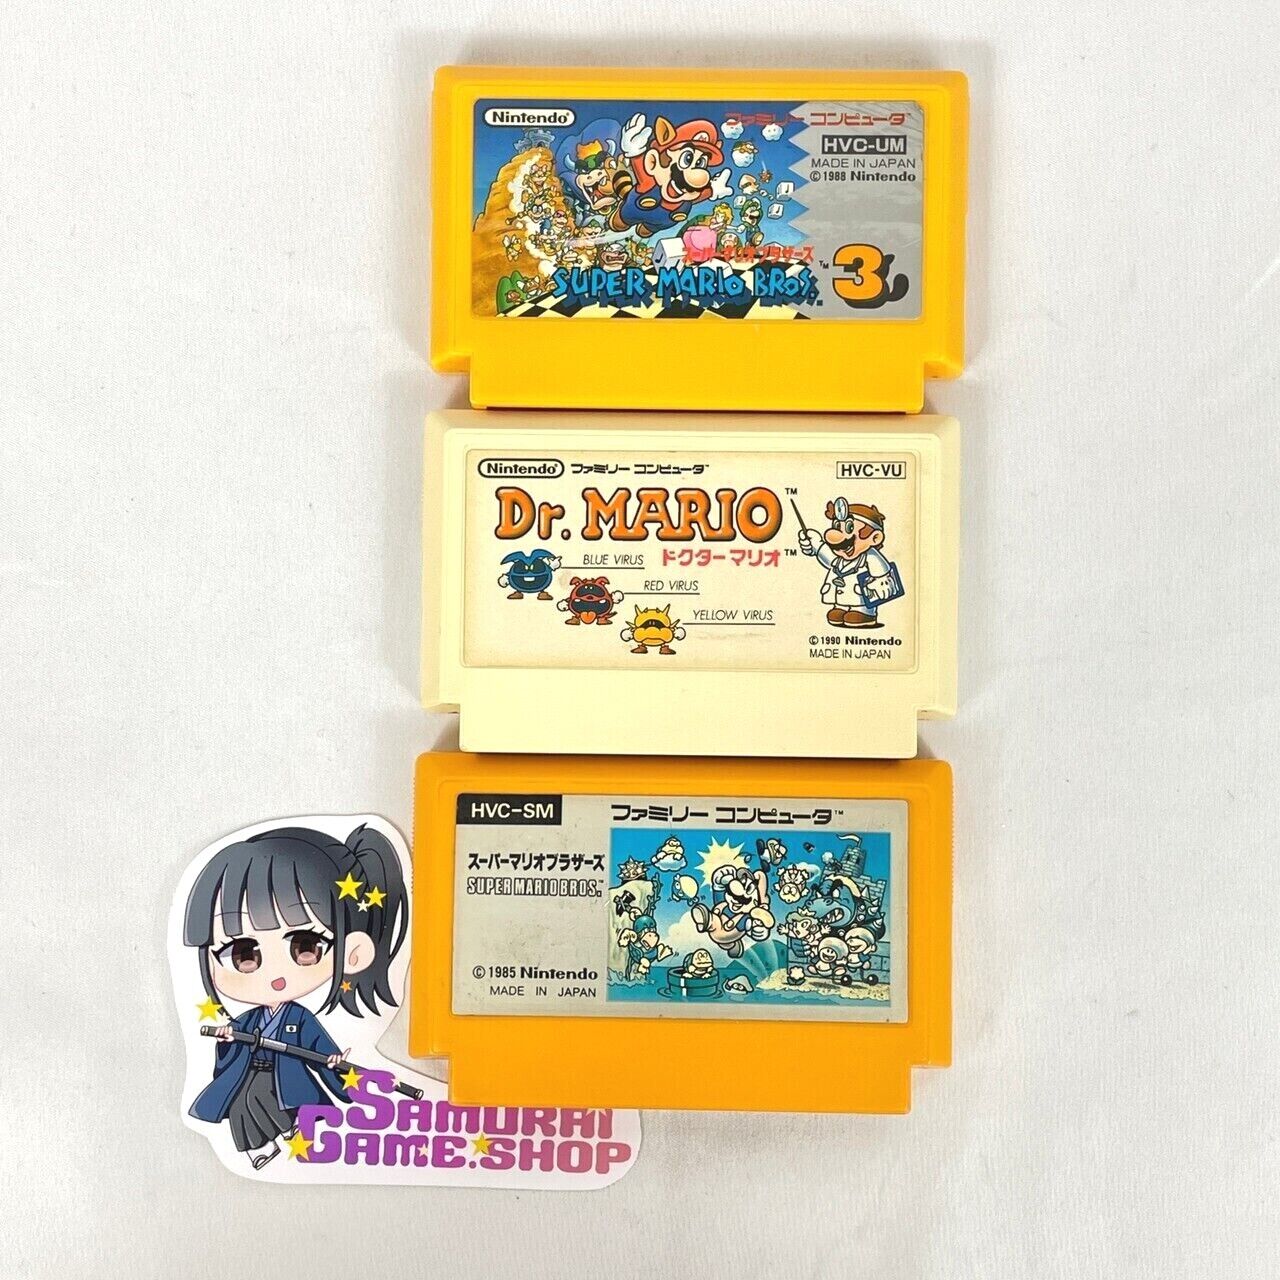 Nintendo Famicom Super Mario Bross 3 Dr. Mario lot set Family Computer Japanese